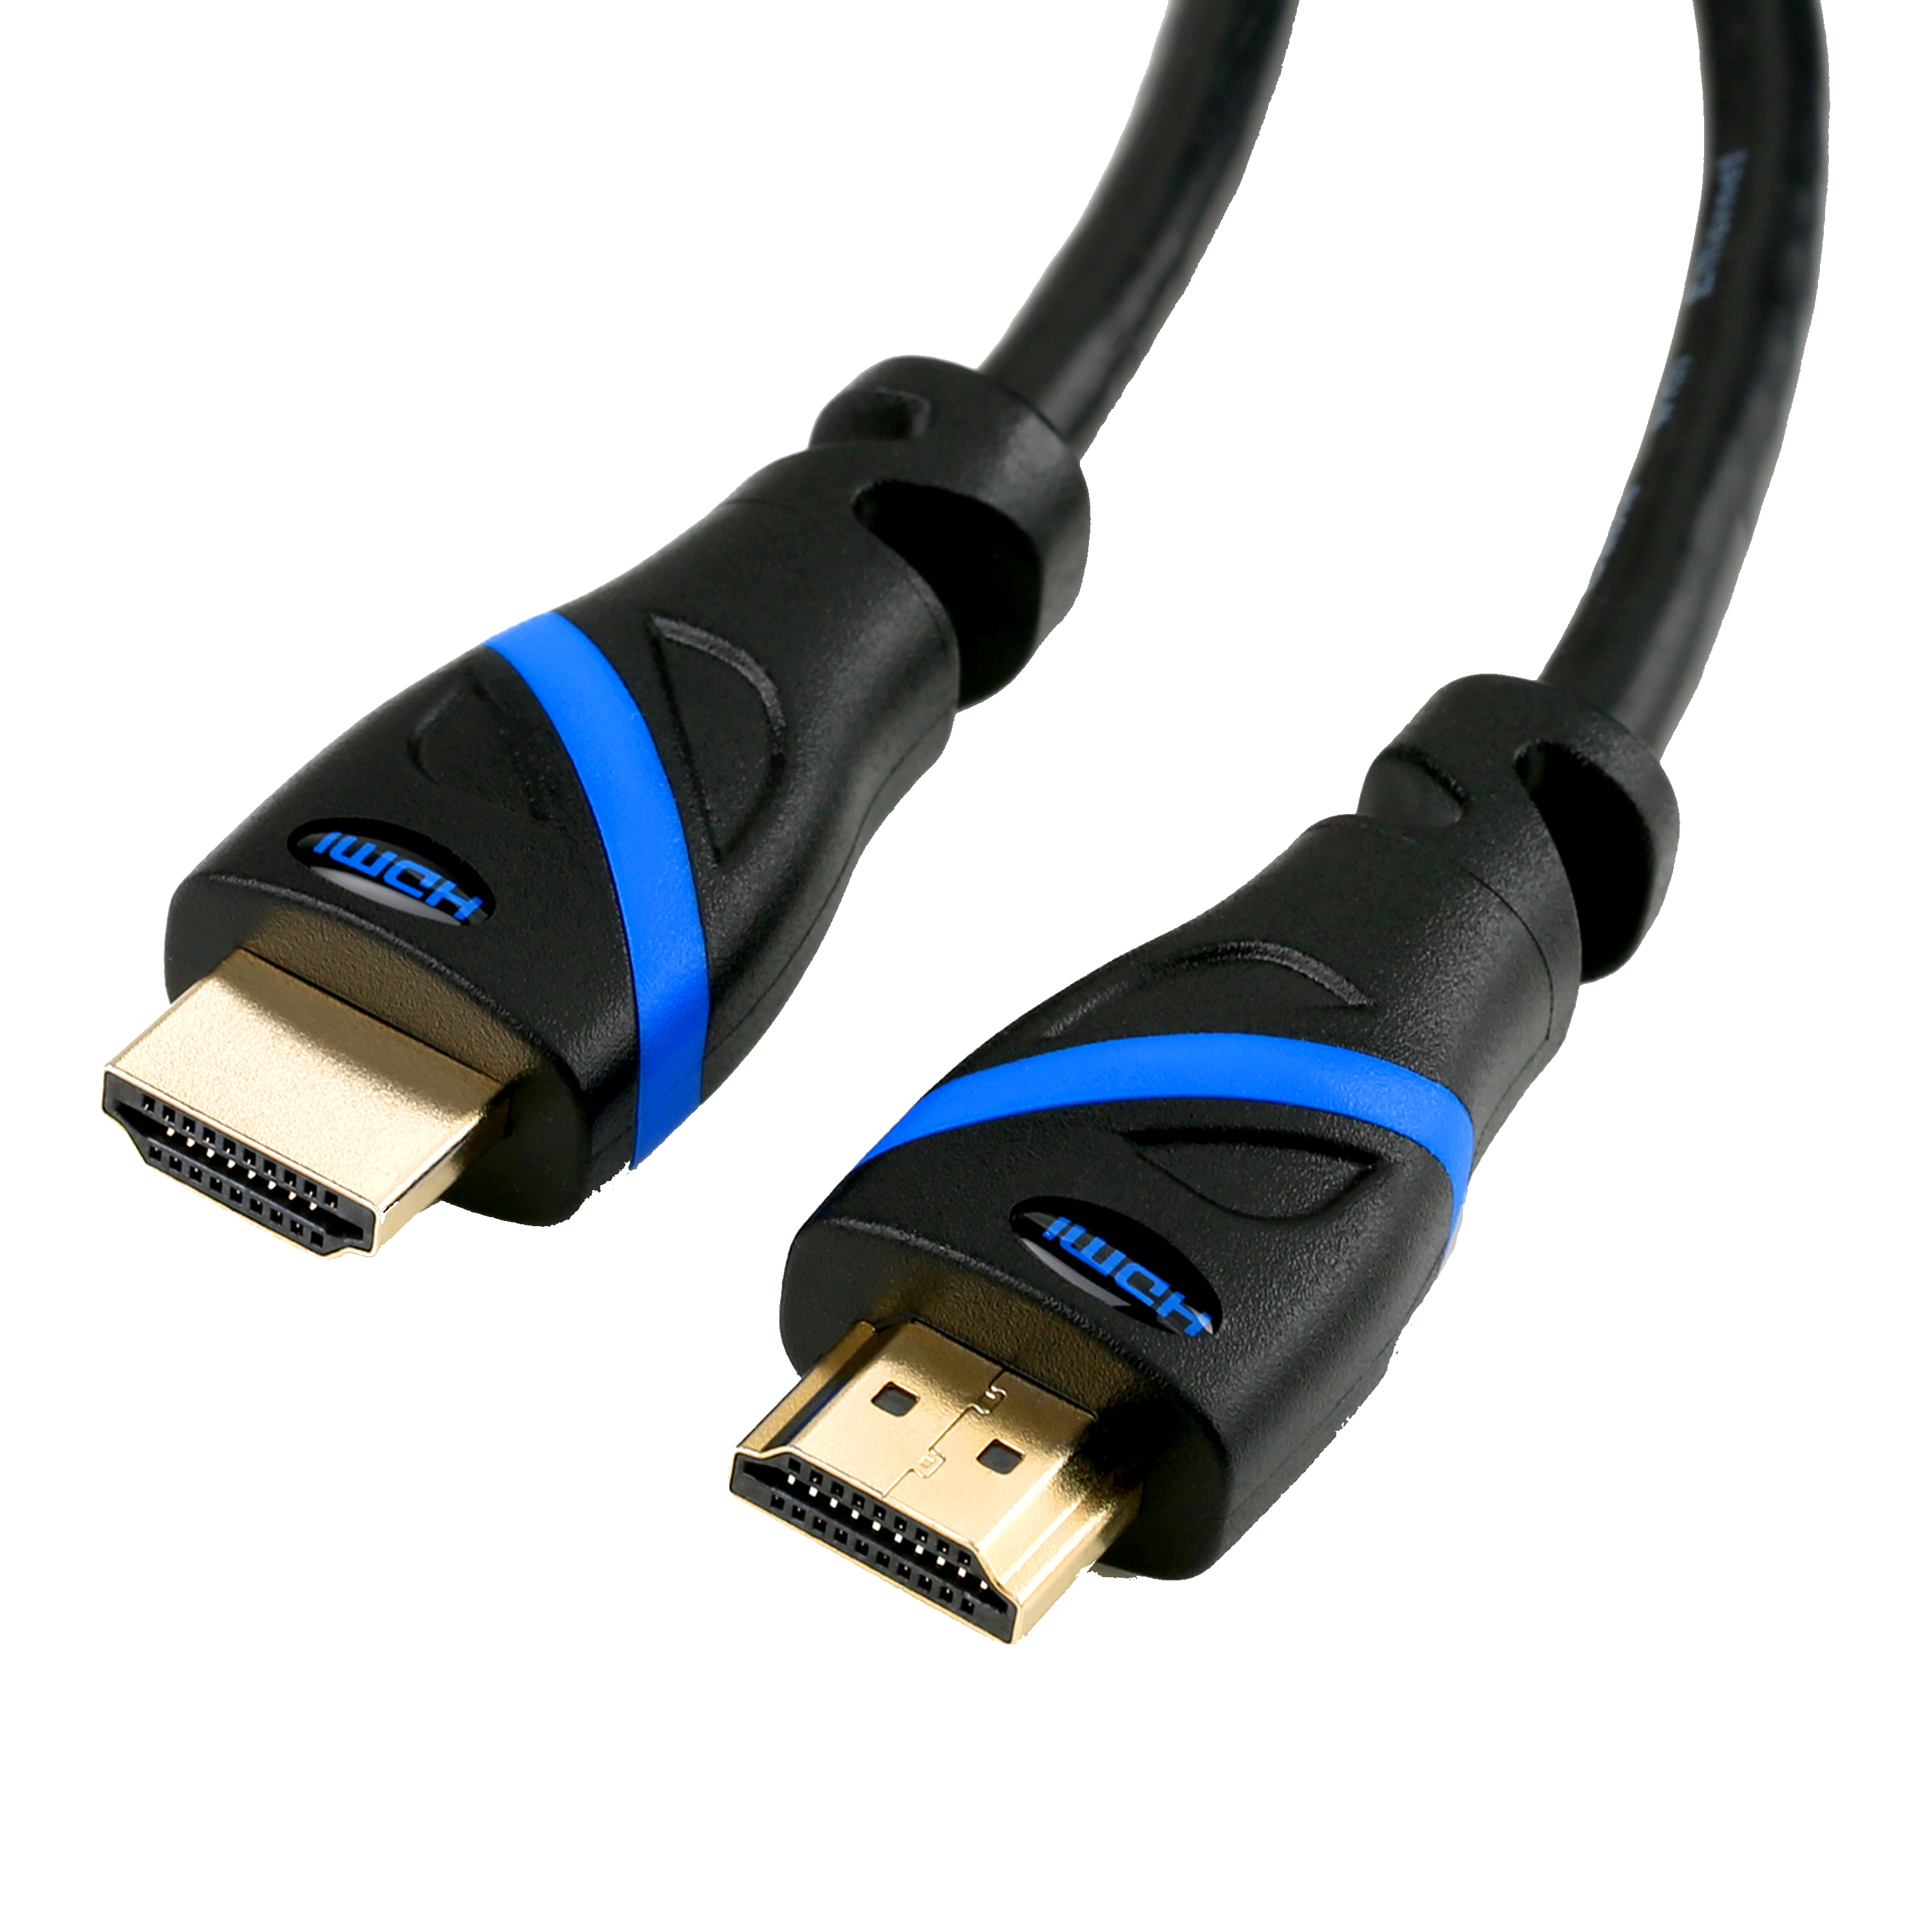 CSL HDMI Kabel, HDMI schwarz/blau Kabel, 5m 2.0